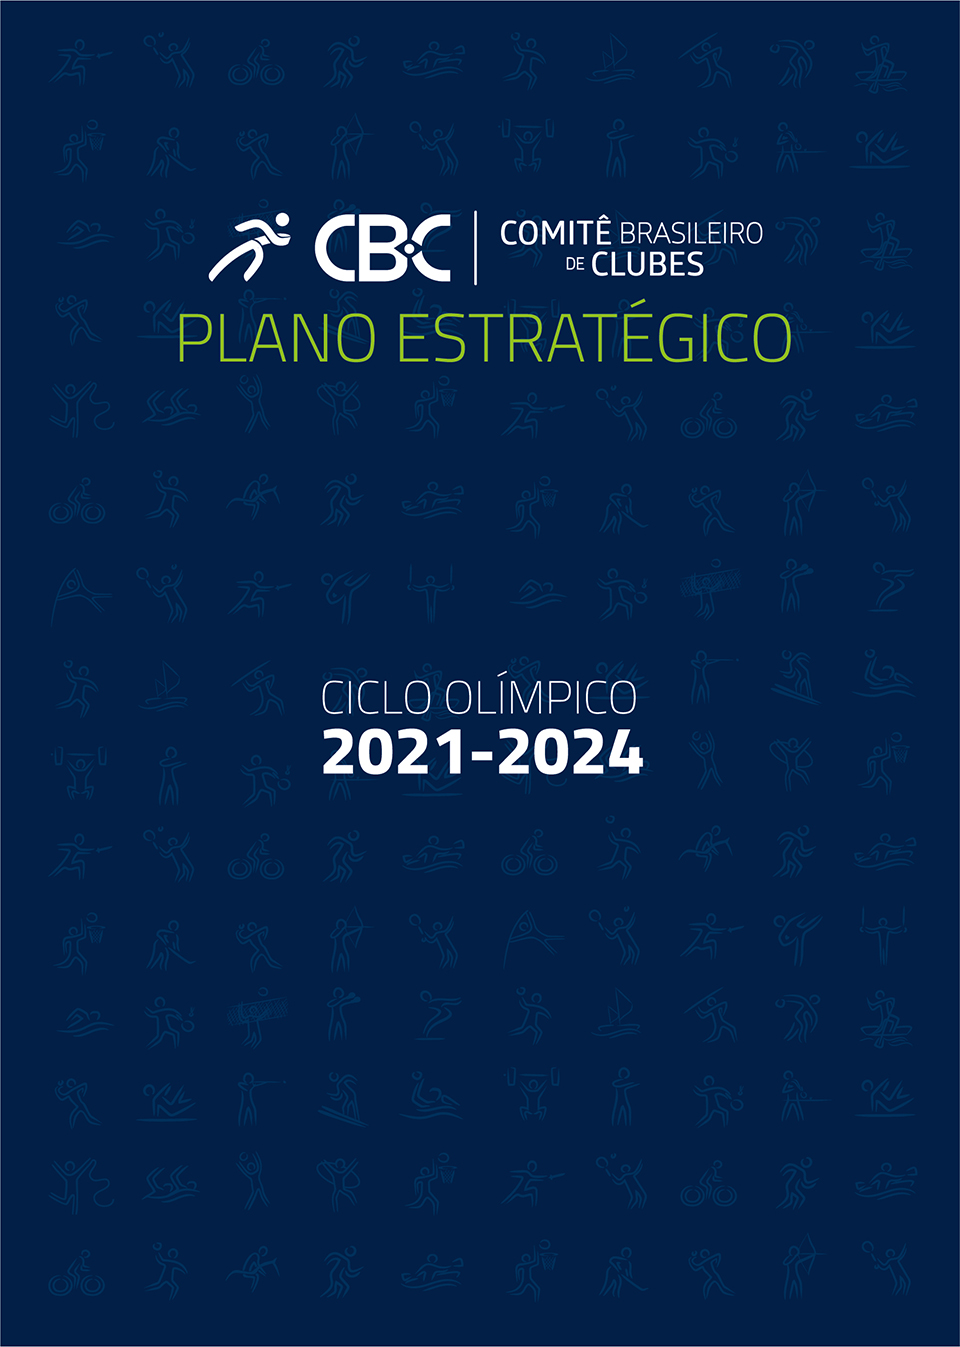 Plano Estratégico 2021-2024